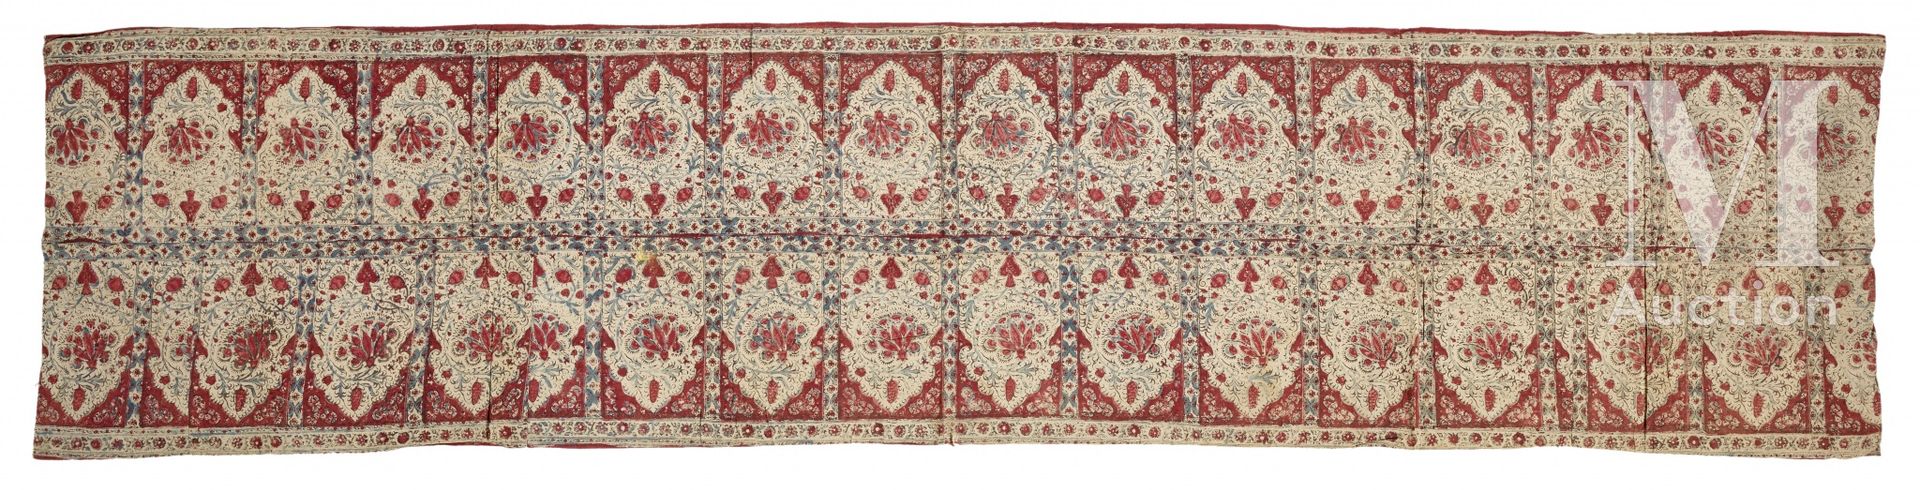 Null Kalamkar挂毯 印度，约1900年 手工印刷的棉质挂毯，装饰有花瓶、阿拉伯式花纹和对称的弧形图案的动画板。米色棉布衬里。48 x 205 cm &hellip;